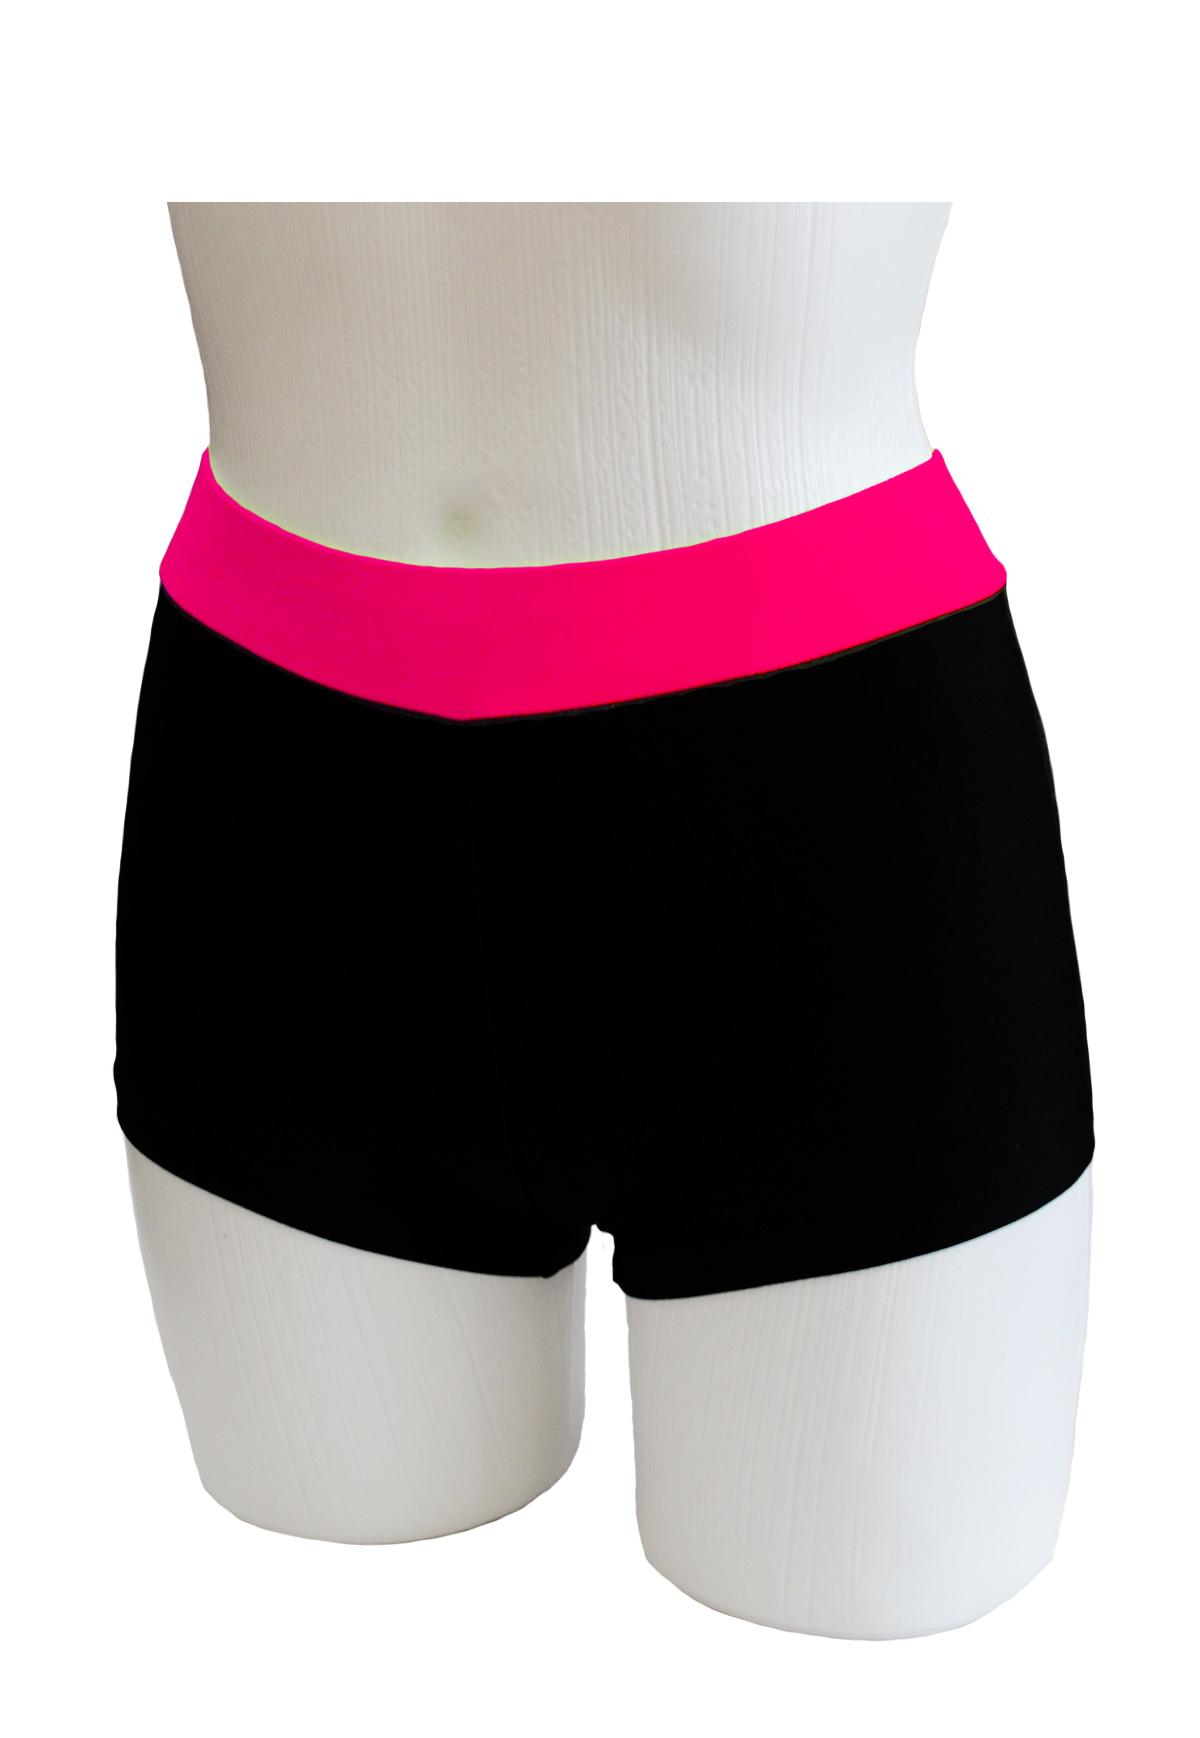 Шорты женские для спортивной гимнастики GK Sport ШКМ3.1Р черные с розовым поясом